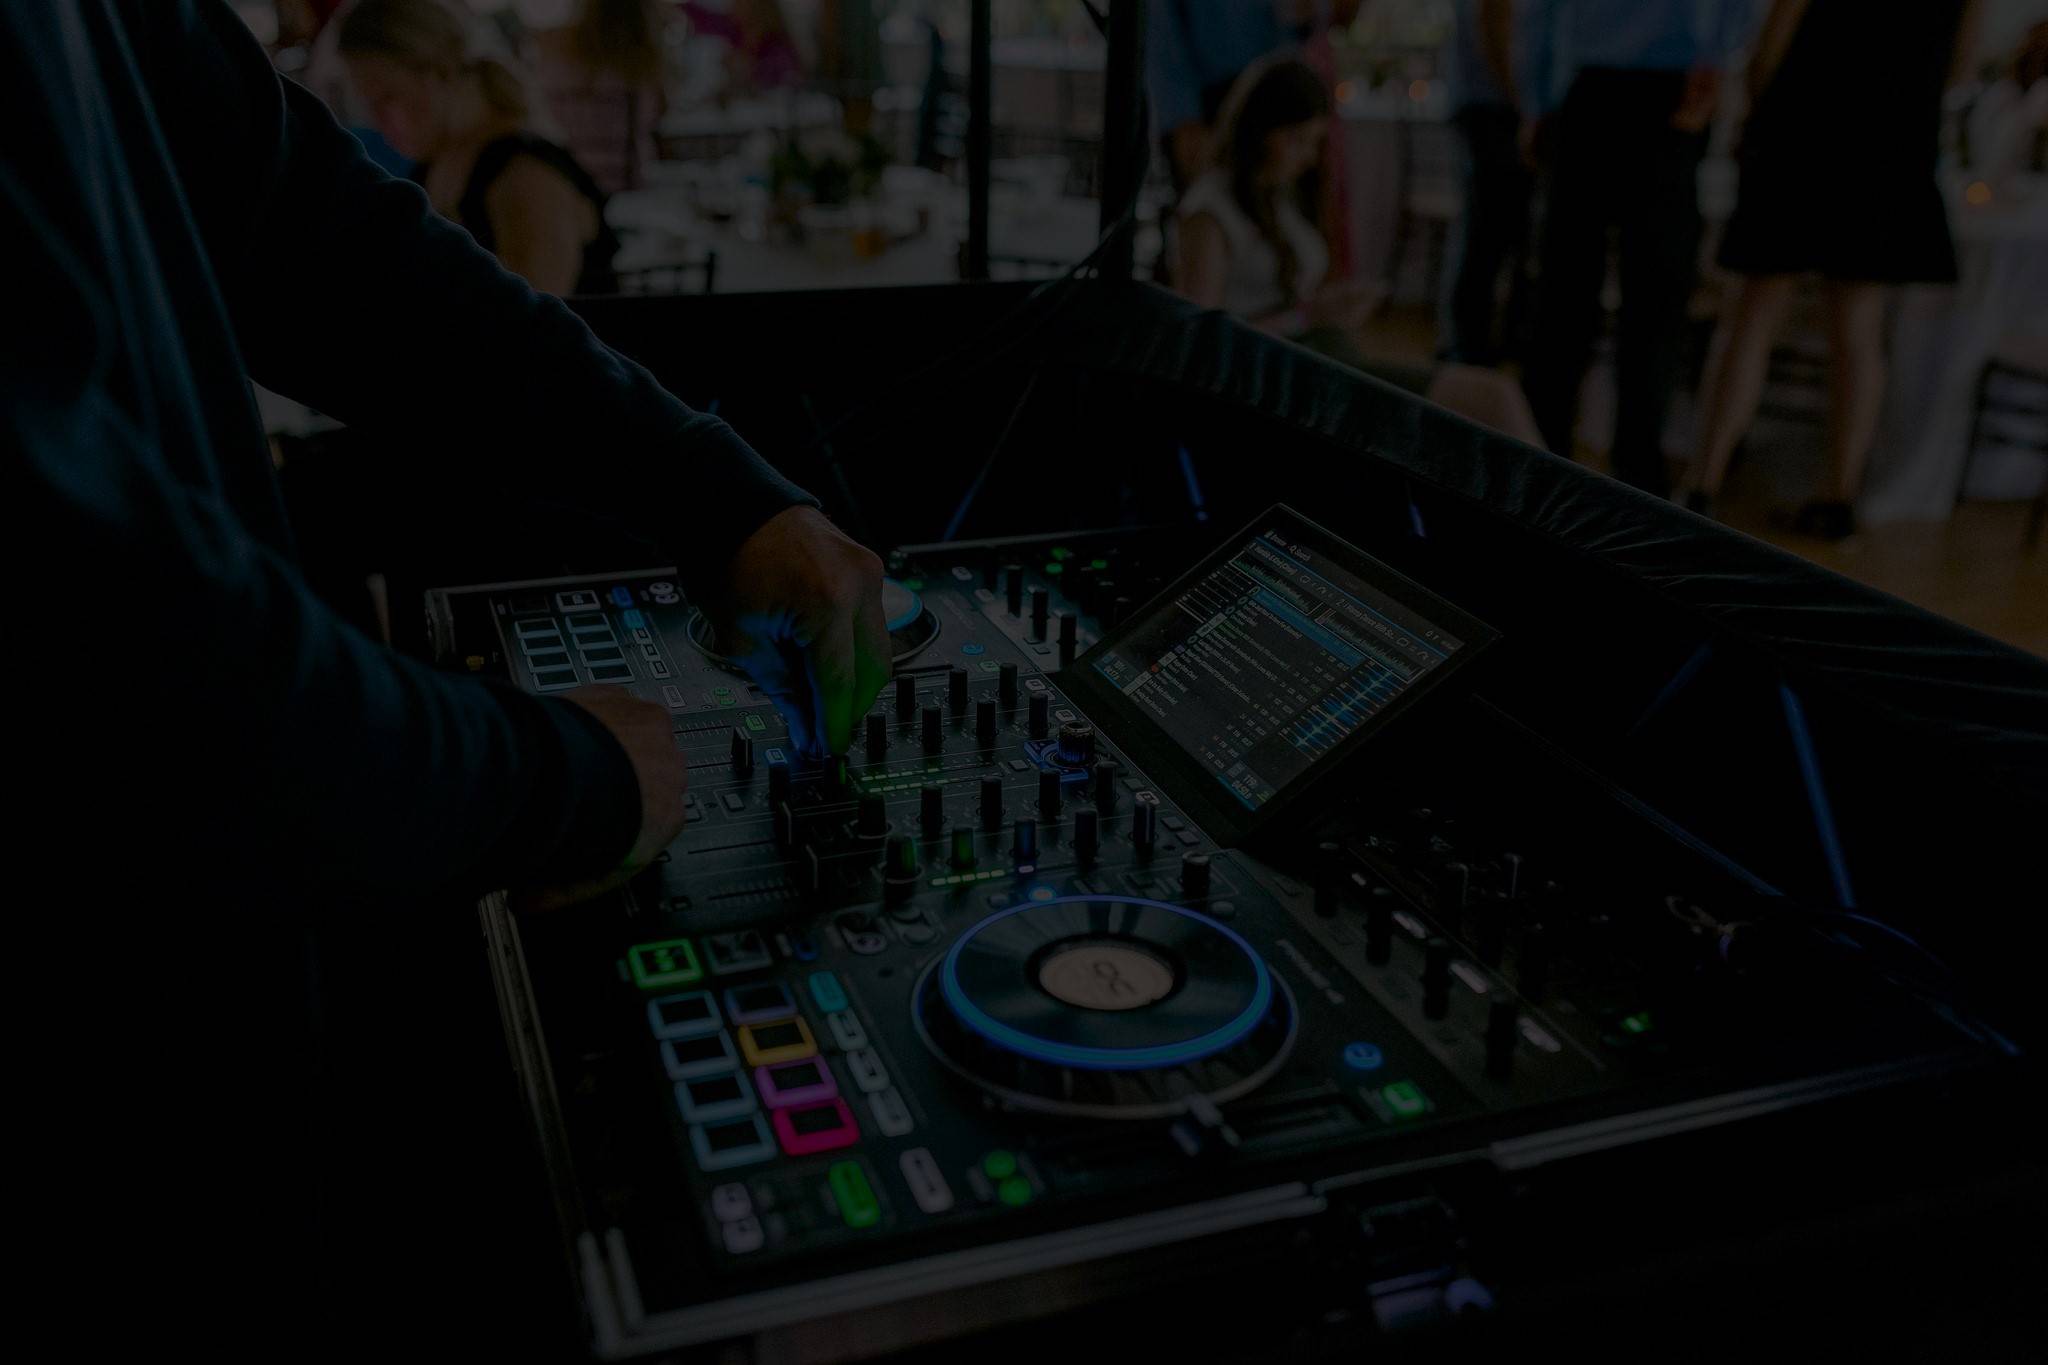 DJ Setup background